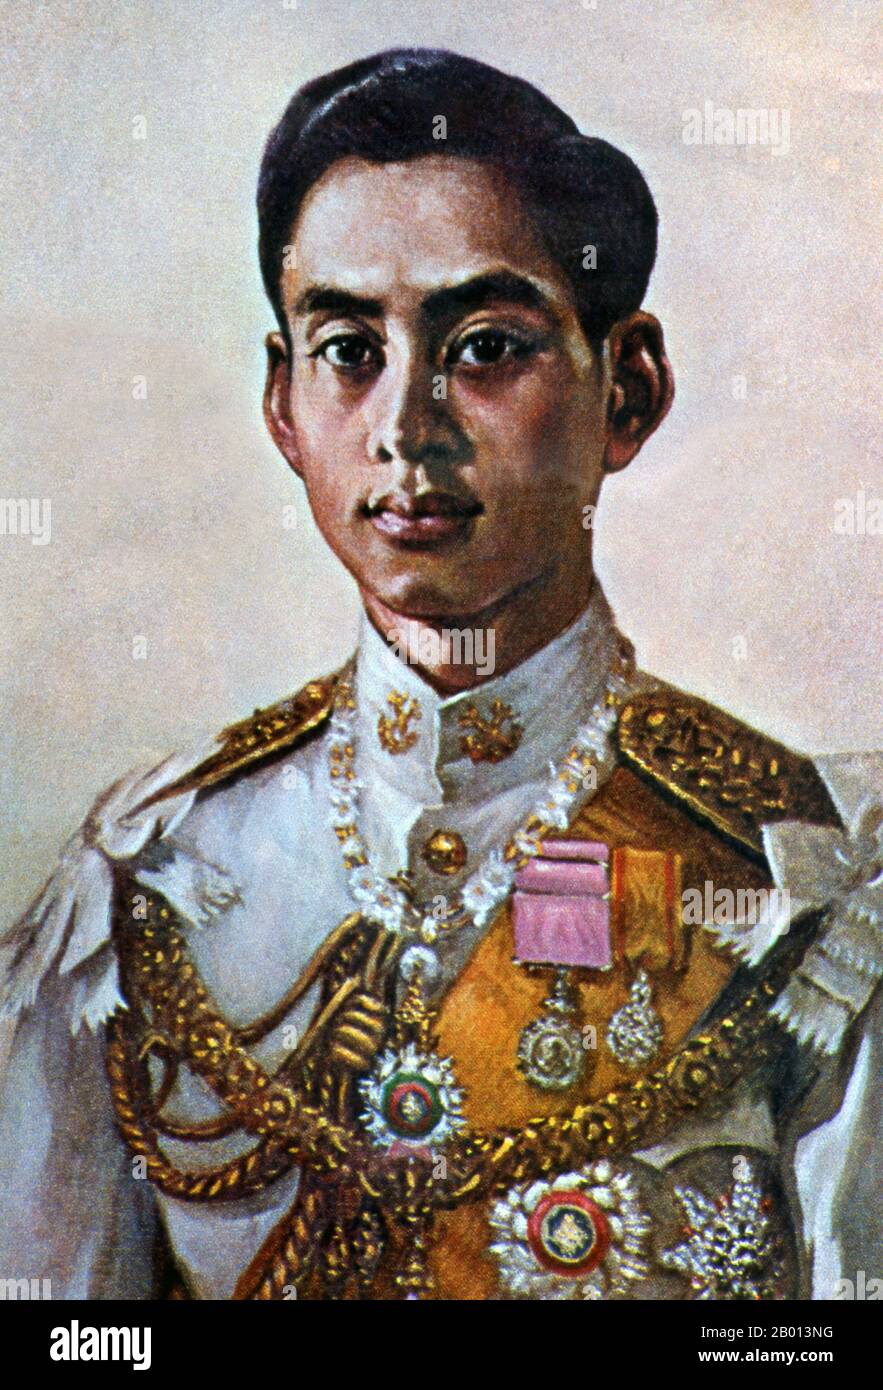 Thailandia: Re Rama VIII, Ananda Mahidol (20 settembre 1925 – 9 giugno 1946), ottavo monarca della dinastia Chakri. Olio su tela pittura, 20 ° secolo. Ananda Mahidol, noto anche come Rama VIII, è stato l'ottavo monarca della Thailandia sotto la Casa di Chakri. Fu riconosciuto re dall'Assemblea Nazionale nel marzo 1935; all'epoca era un ragazzo di nove anni che viveva in Svizzera. Tornò in Thailandia nel dicembre 1945. Fu trovato ucciso nel suo letto nel giugno 1946. Gli esaminatori medici lo hanno giudicato un omicidio e tre servi sono stati giustiziati. La sua uccisione è stata oggetto di molte polemiche. Foto Stock